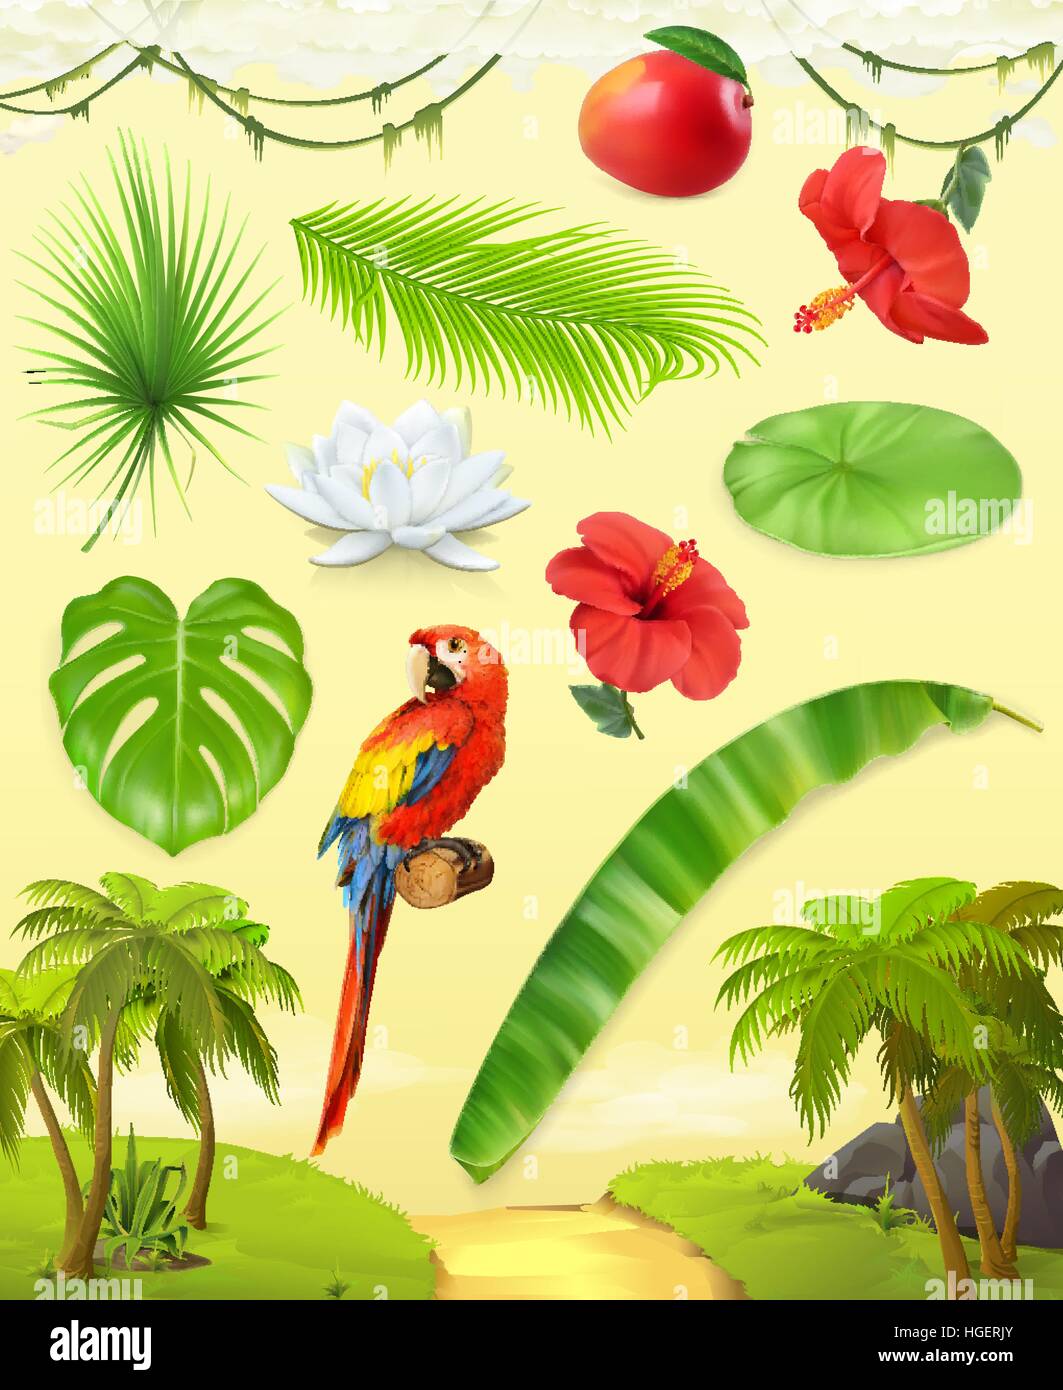 Dschungel. Palmen, Bananen, Mango, Papagei, Seerose, Hibiskus. Satz von Blättern und Blüten. Tropische Pflanzen. 3D Vektor Icon-set Stock Vektor